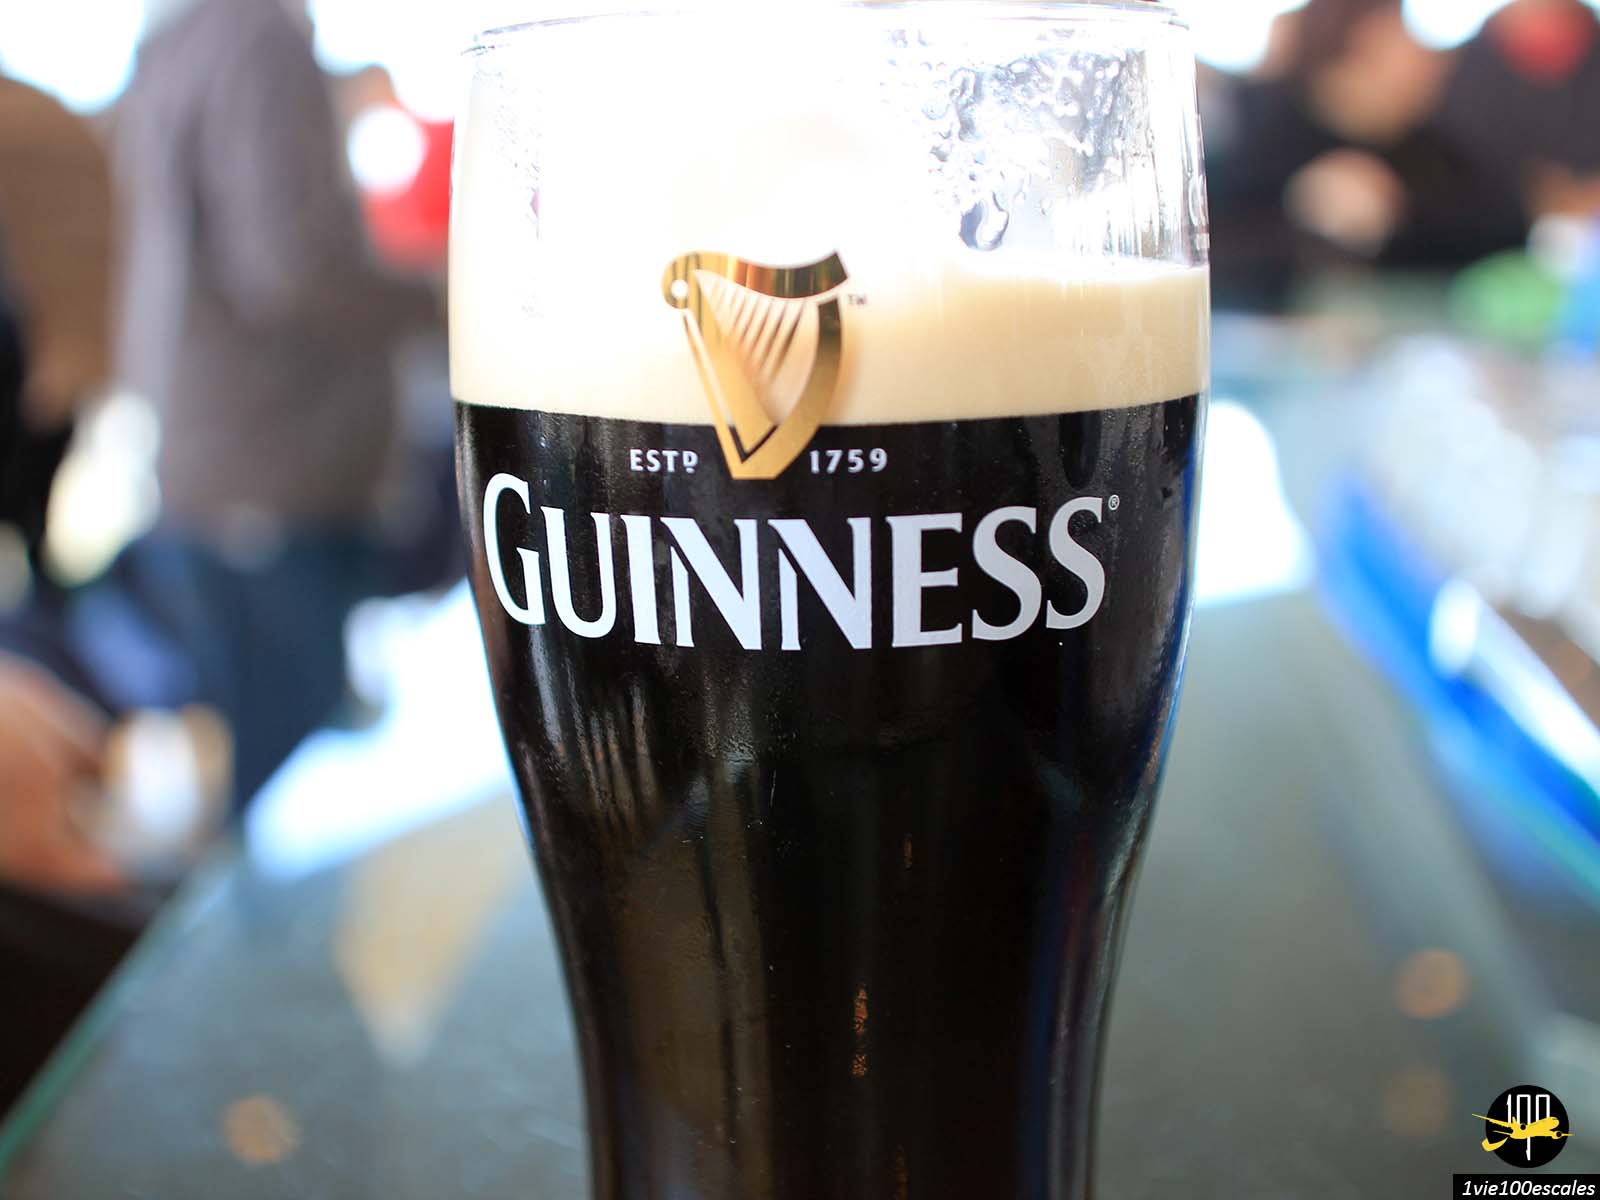 Marque phare des bières irlandaises, Guinness a depuis l'an 2000 son musée à Dublin. La Guinness Storehouse était un ancien bâtiment dédié à la fermentation